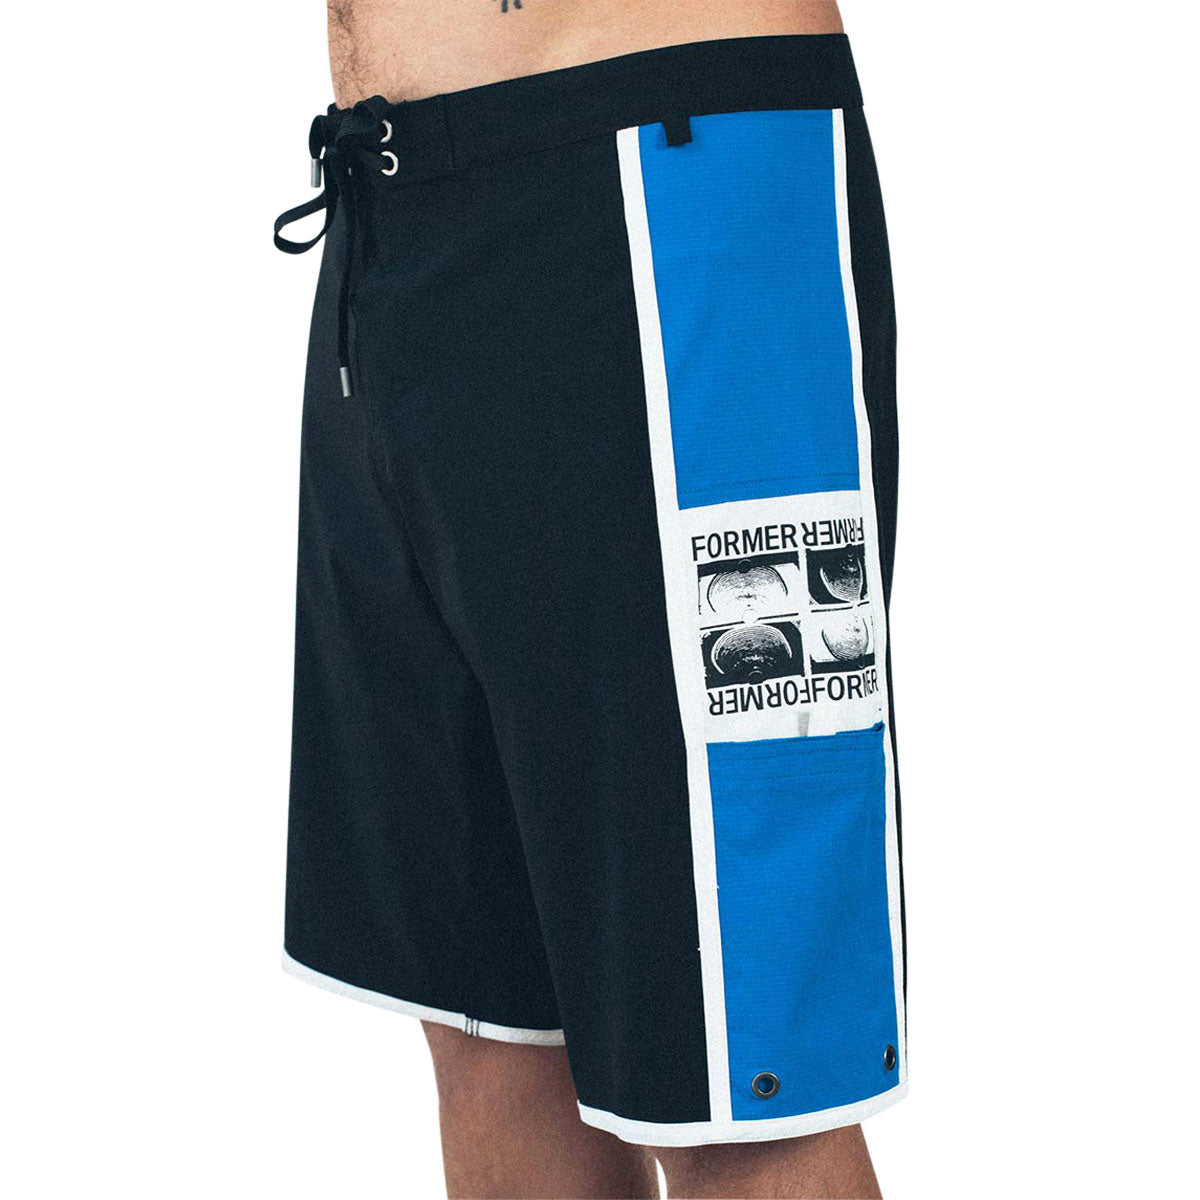 Former Manners 20 Shorts - Black Cobalt image 3